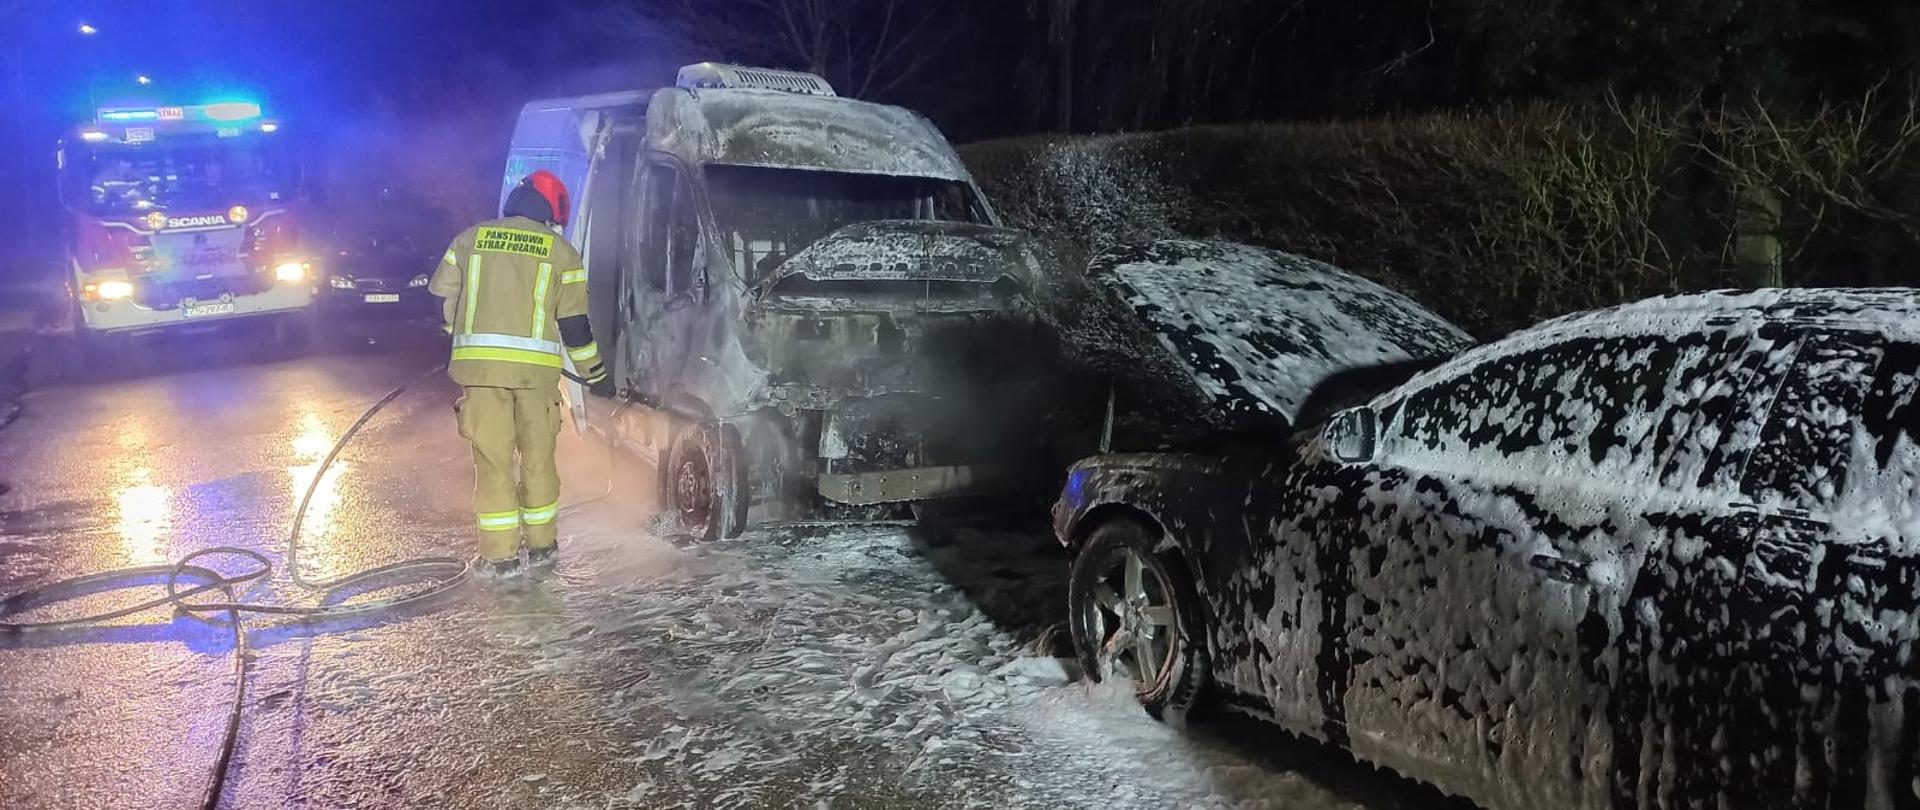 Zdjęcie przedstawia spalone dwa samochody osobowe oraz strażaka gaszącego je.